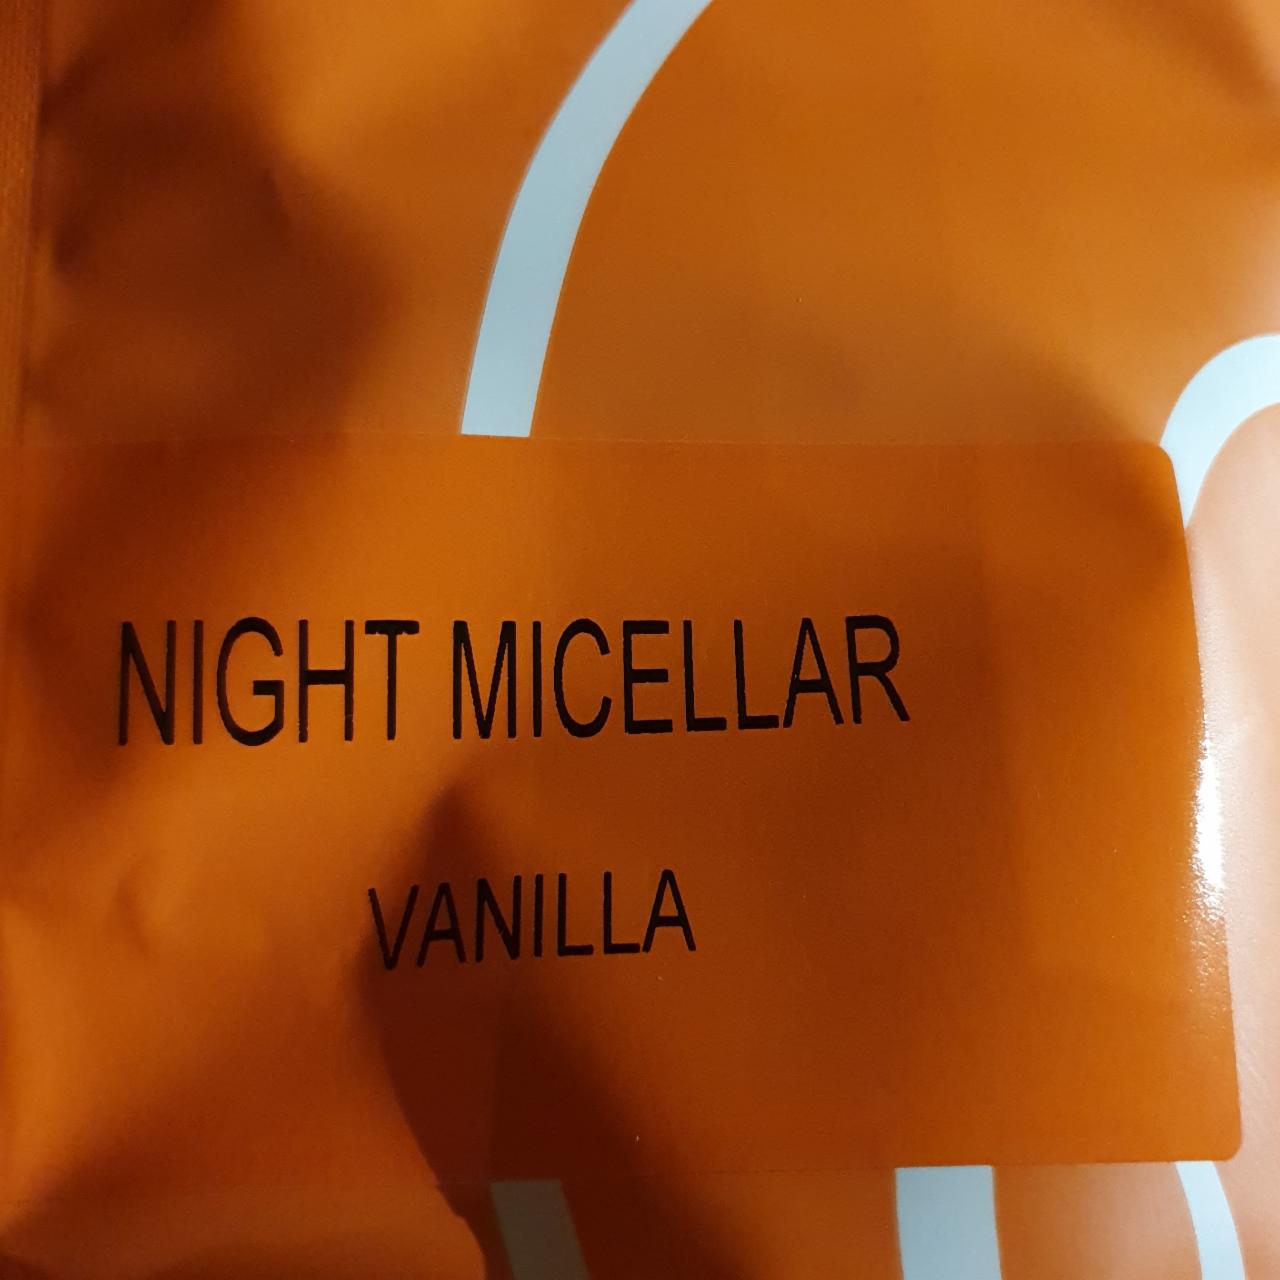 Fotografie - Night Micellar Vanilla Still Mass